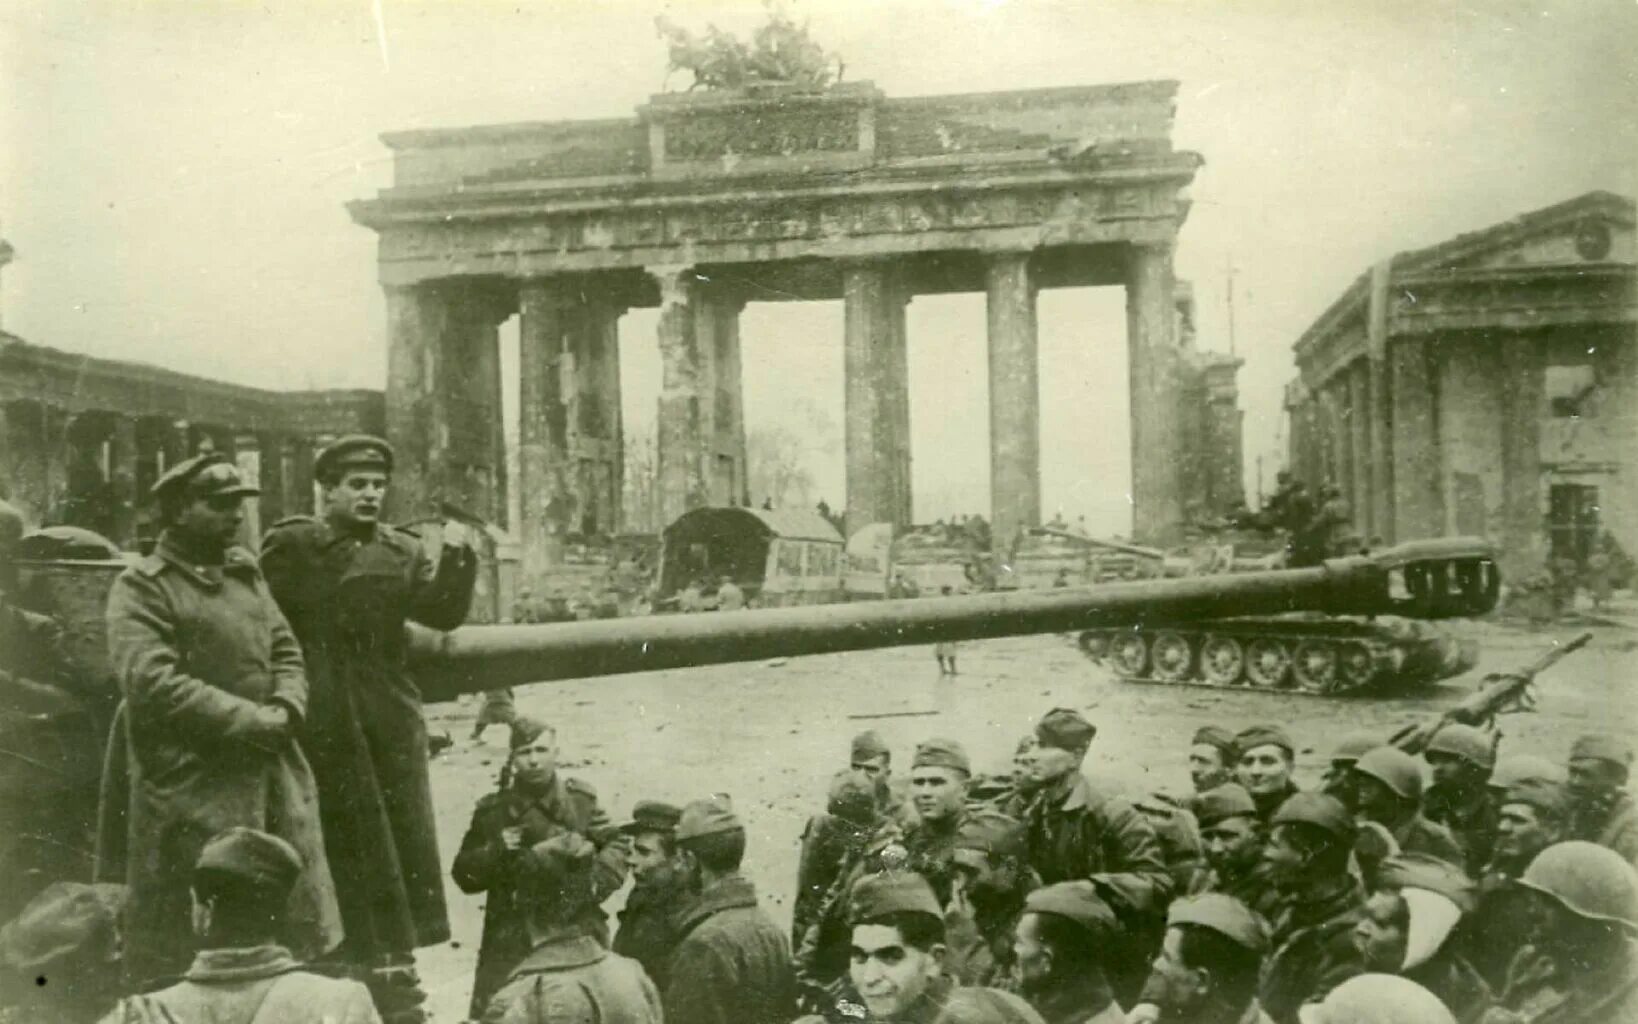 Берлин 5 мая какой год. Бранденбургские ворота 1945. Берлинбрандербурские ворота 1945. ИС 2 Бранденбургские ворота. Берлин 1945 год Бранденбургские ворота.